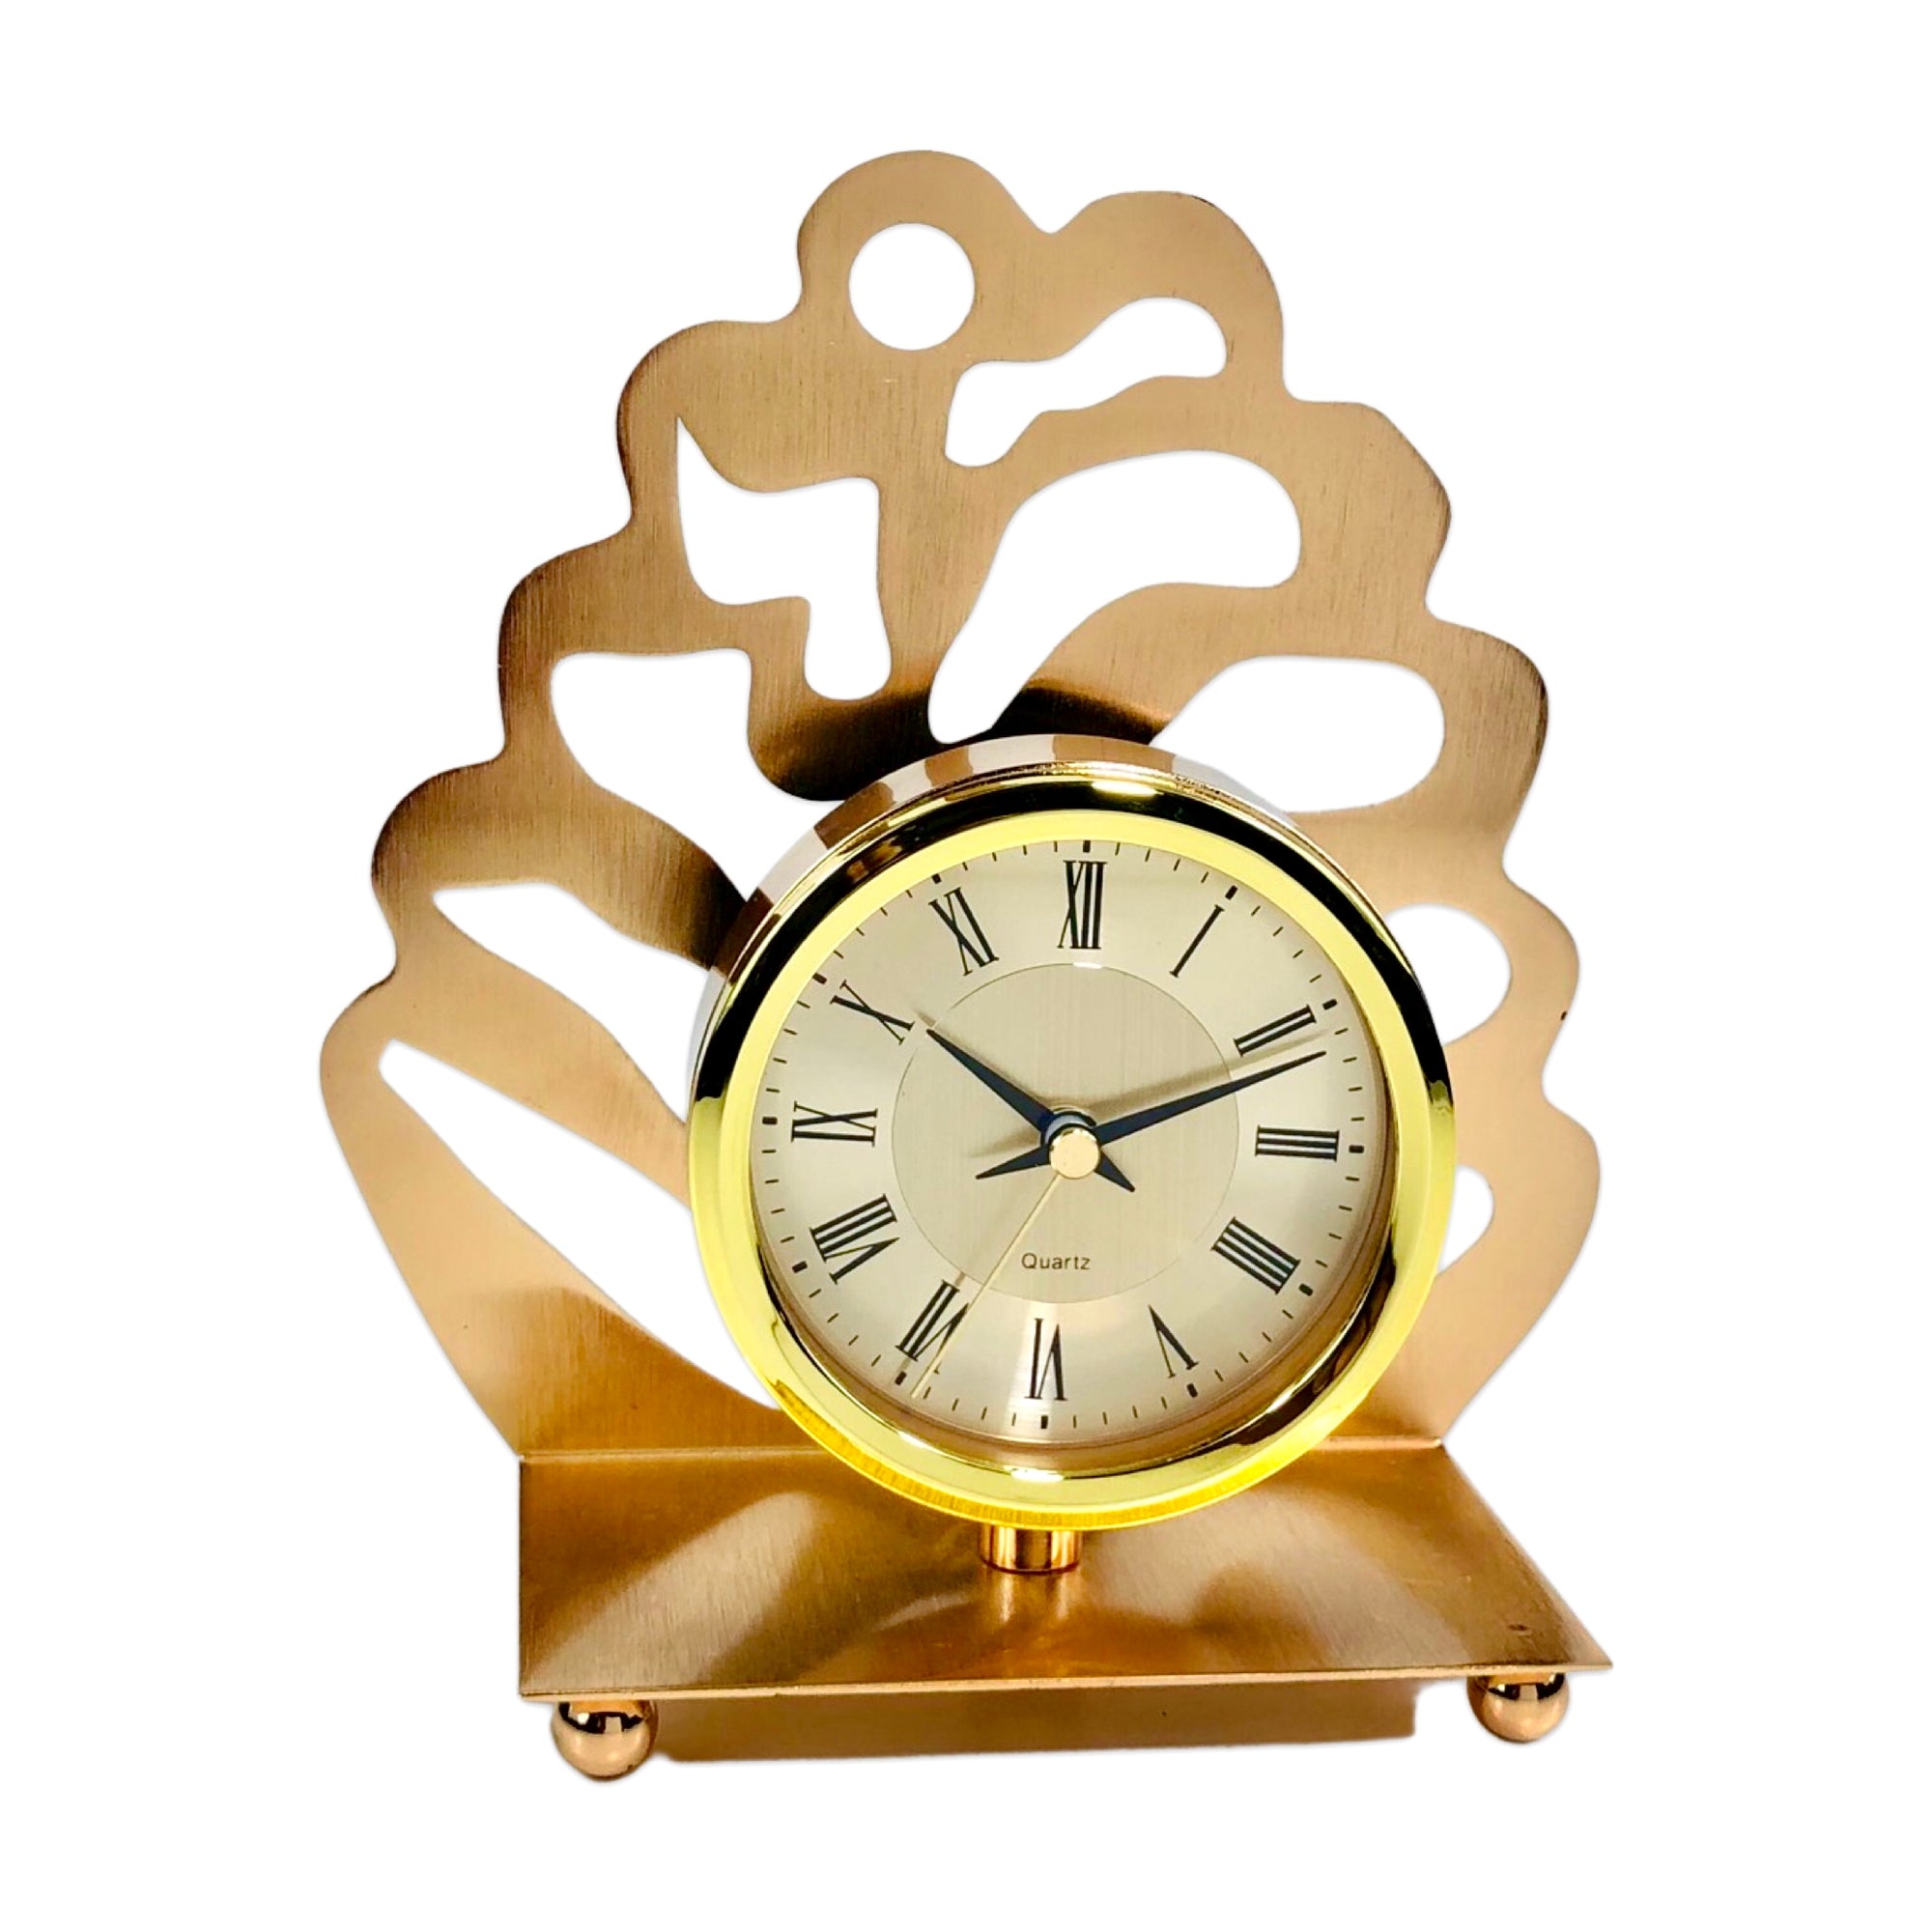 Metallic Golden Table Clock